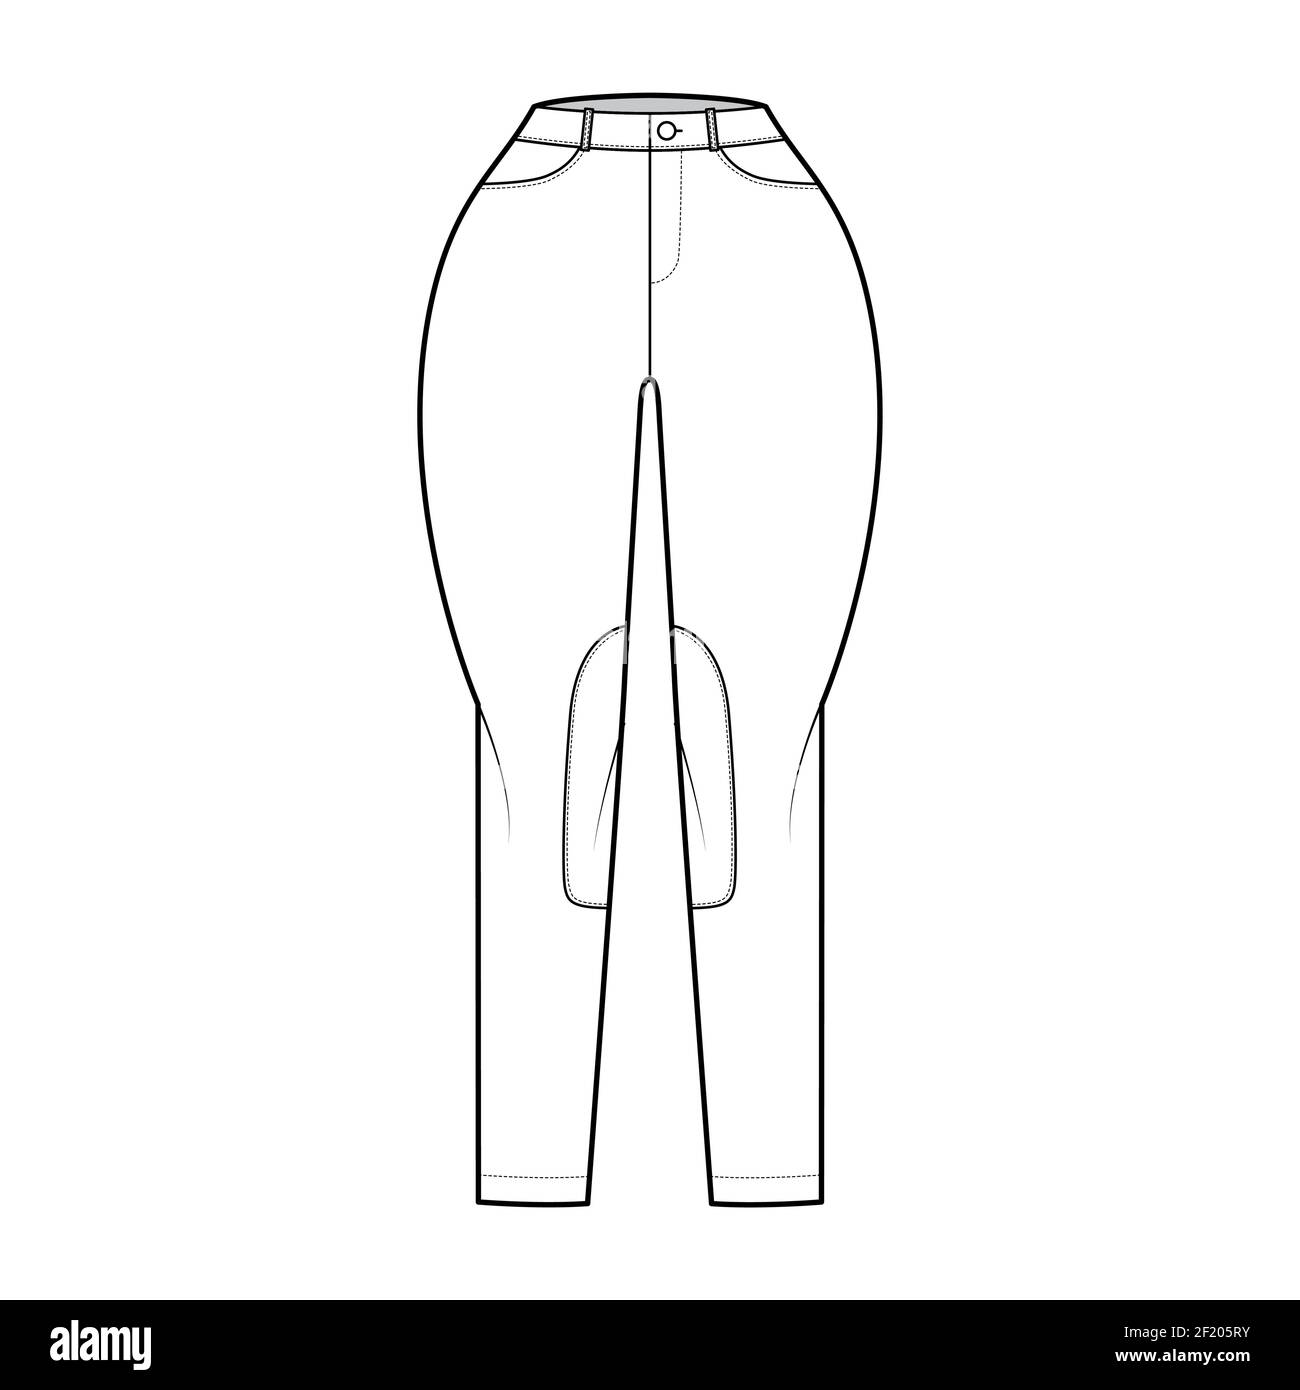 Jeans Classic Jodhpurs pantalons denim technique illustration de la mode avec taille normale, taille haute, passants de ceinture, longueurs complètes. Modèle avant à fond plat, couleur blanche. Femmes, hommes, maquette de CAD unisex Illustration de Vecteur